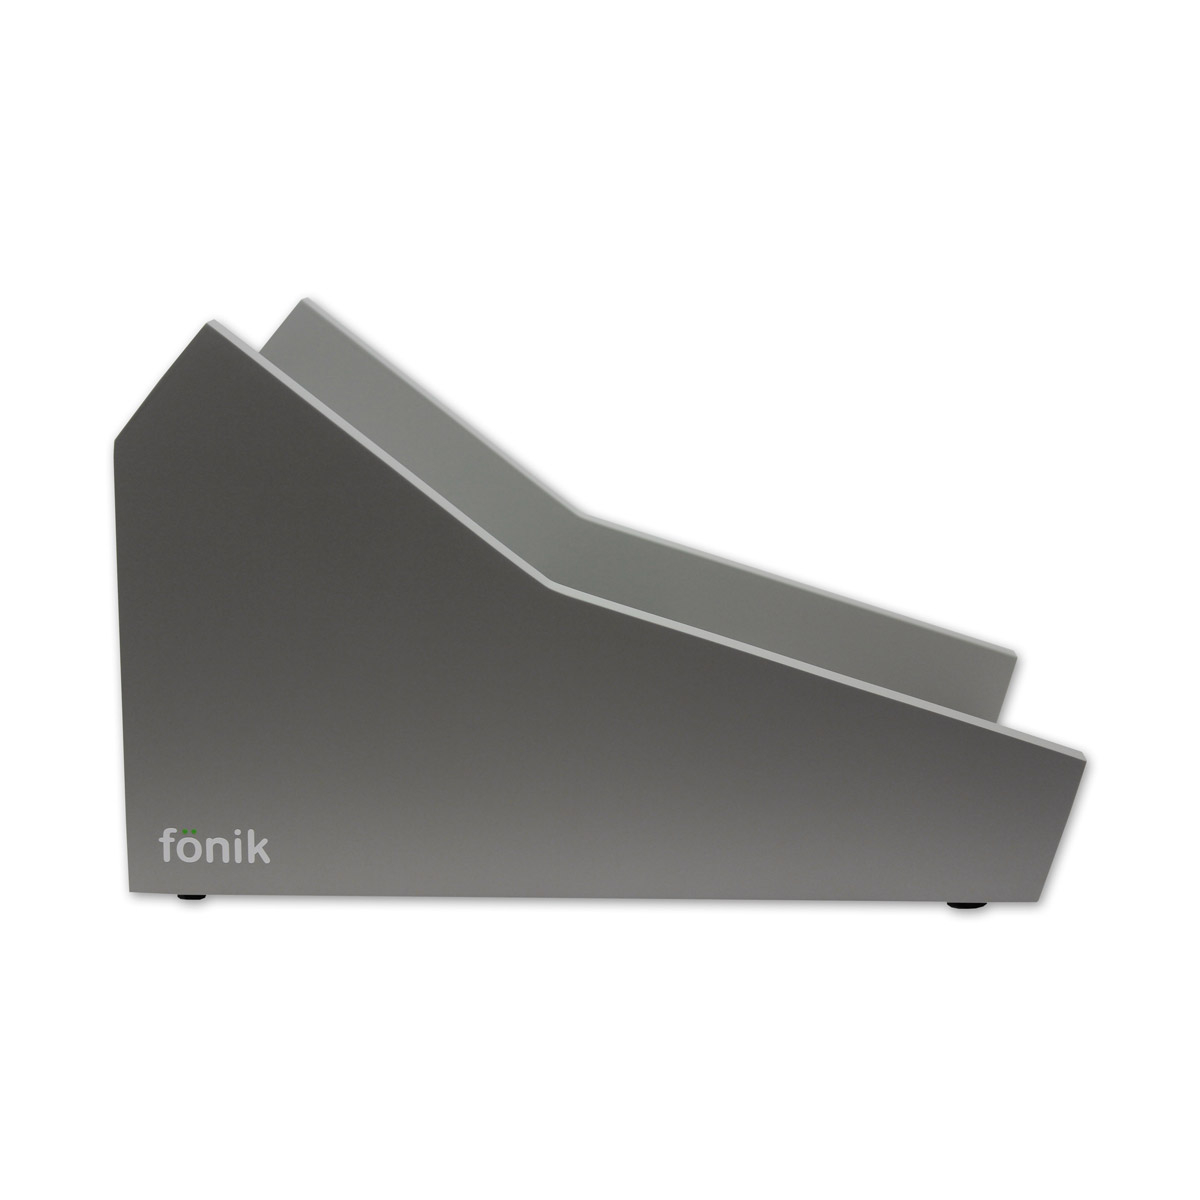 FONIK Audio Stand gris pour 2x Digitakt/Digitone 2 niveaux (vendus séparément)